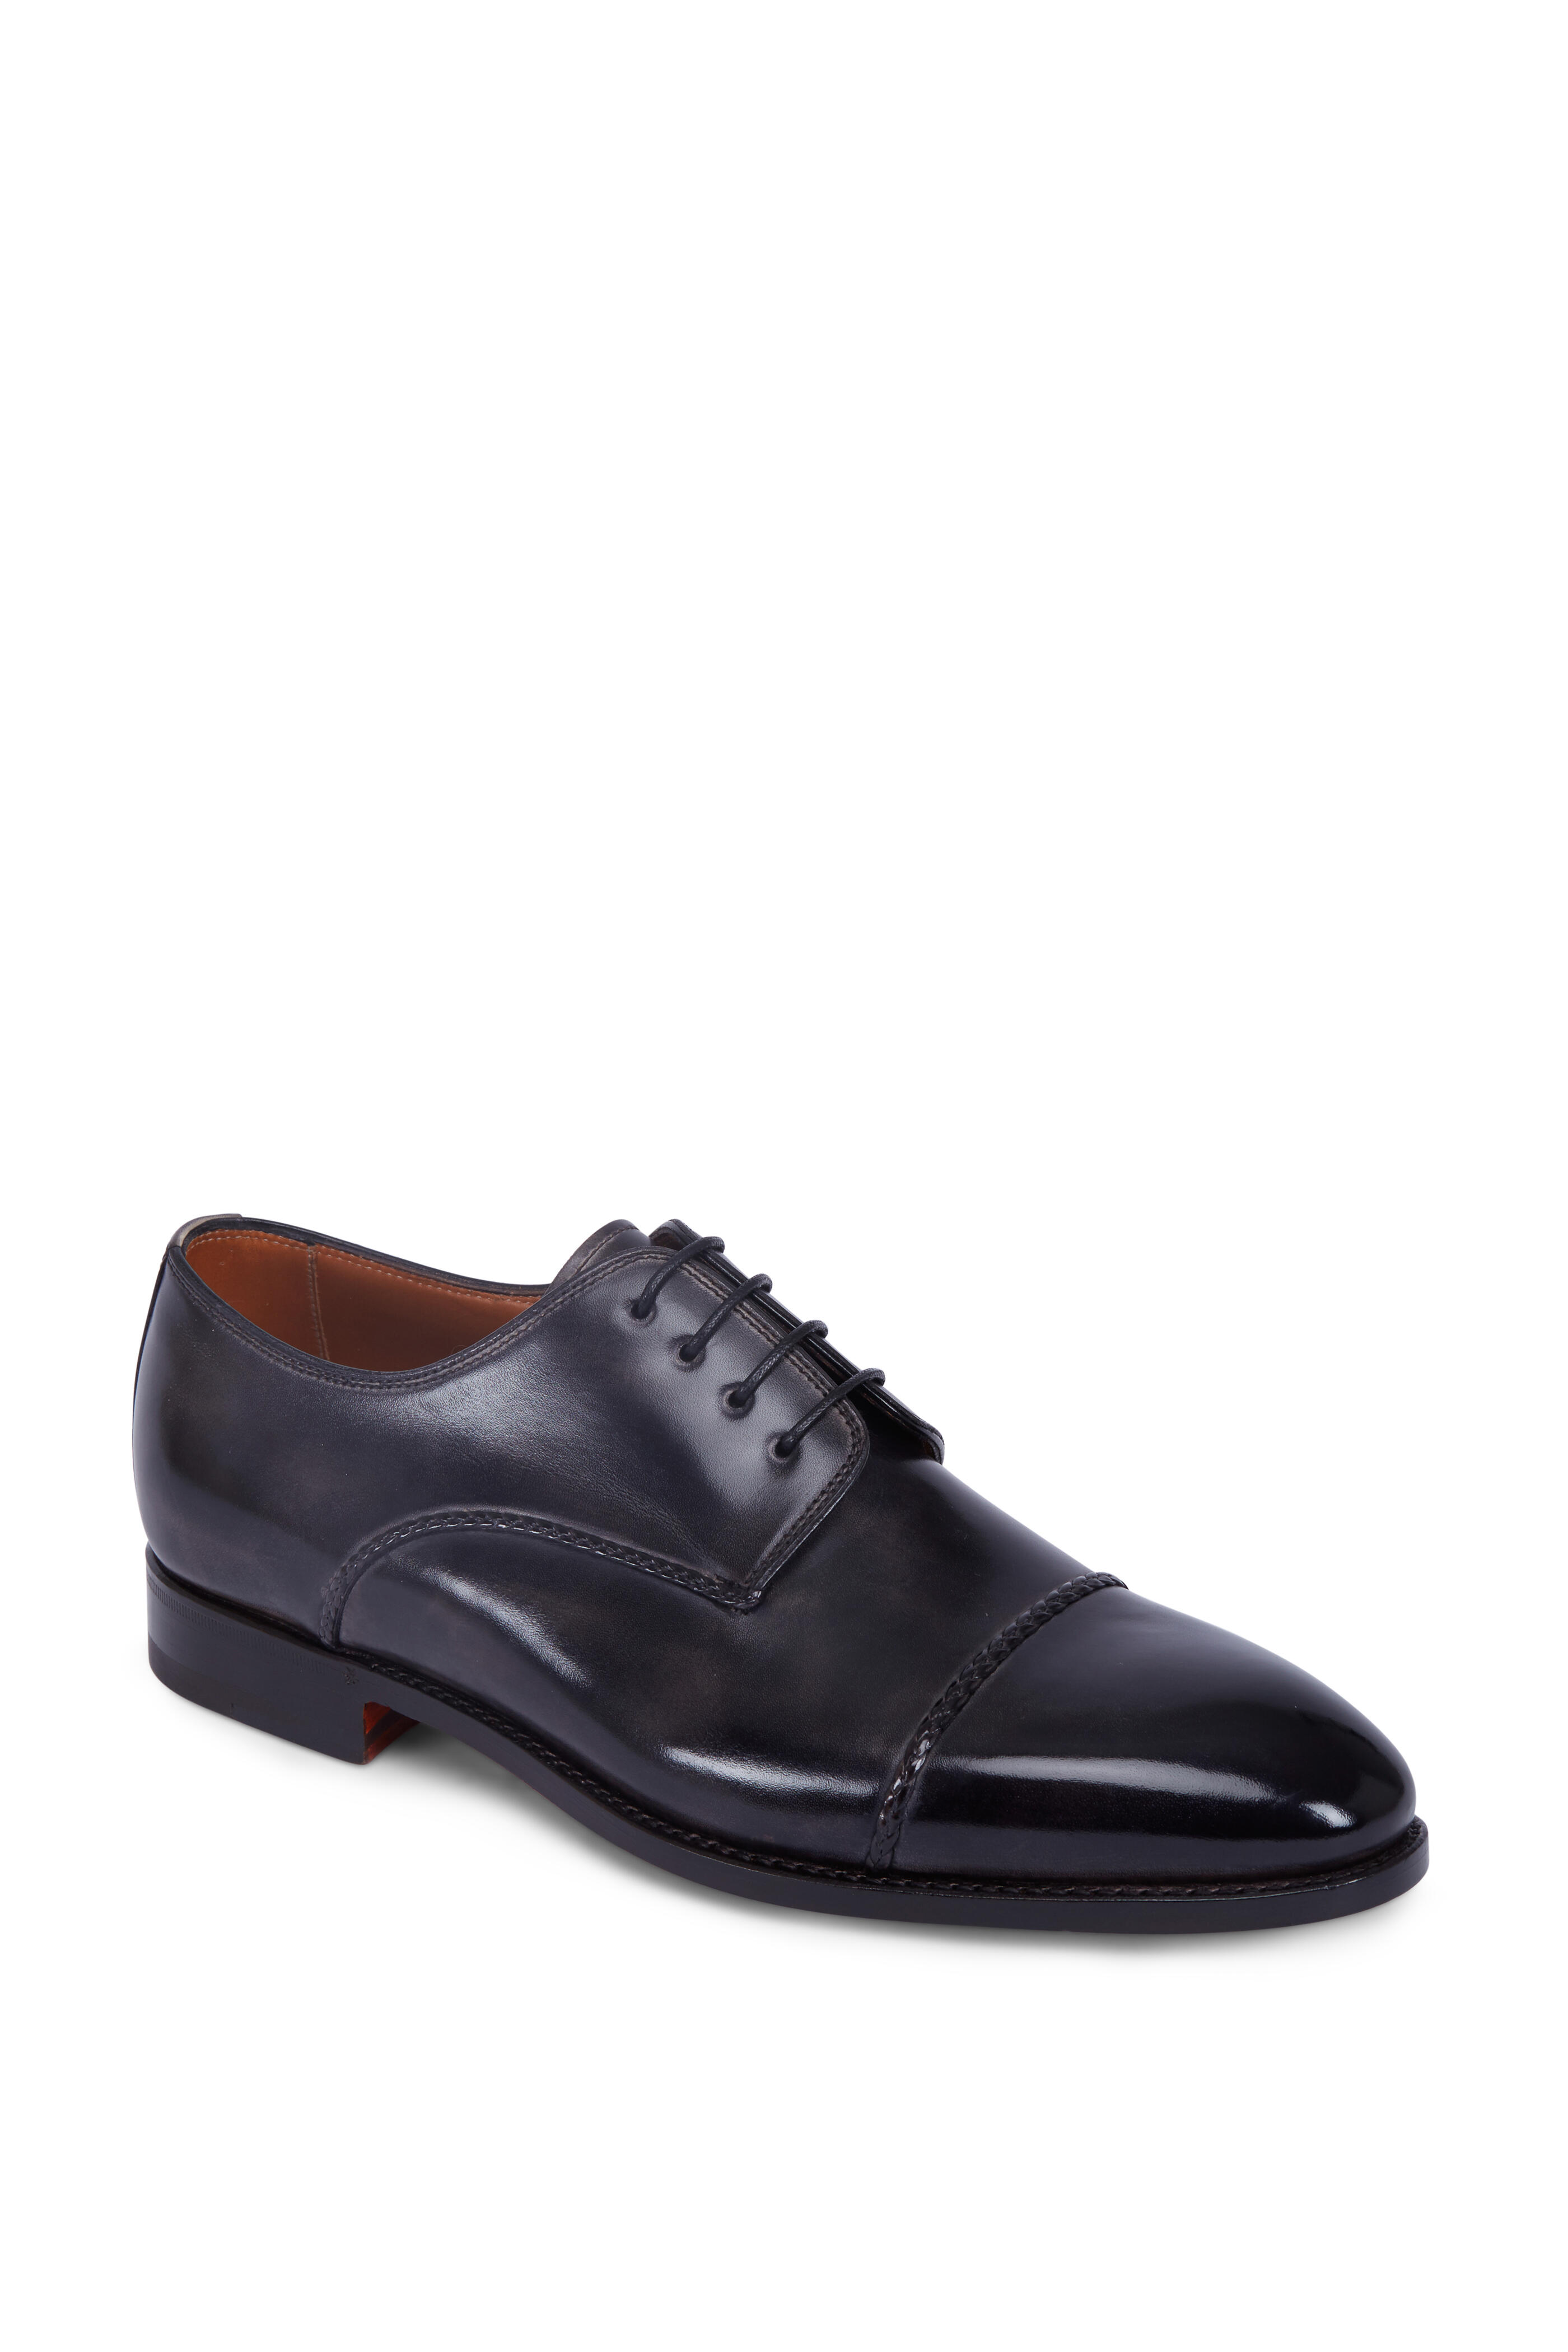 Bontoni - D'Amore Grey Leather Cap-Toe Derby Shoe